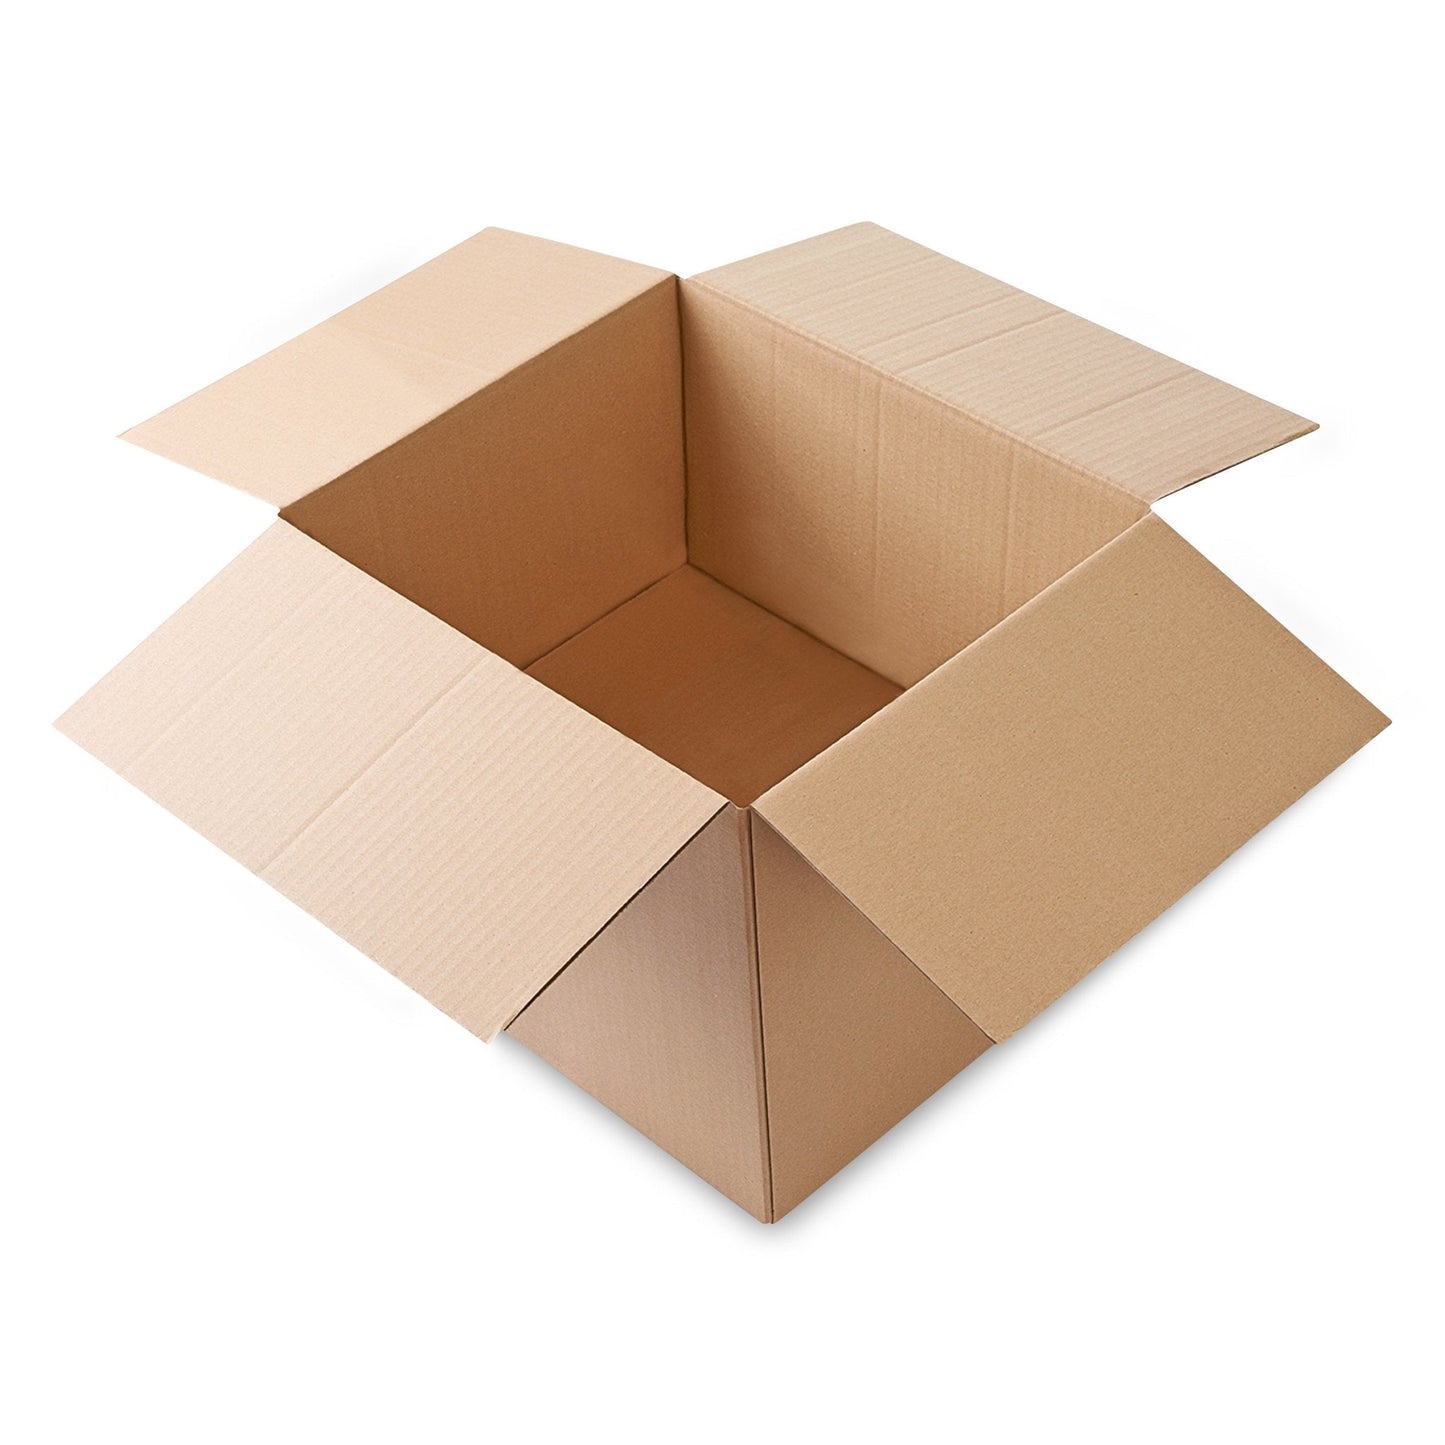 Square Corrugated Cardboard Box